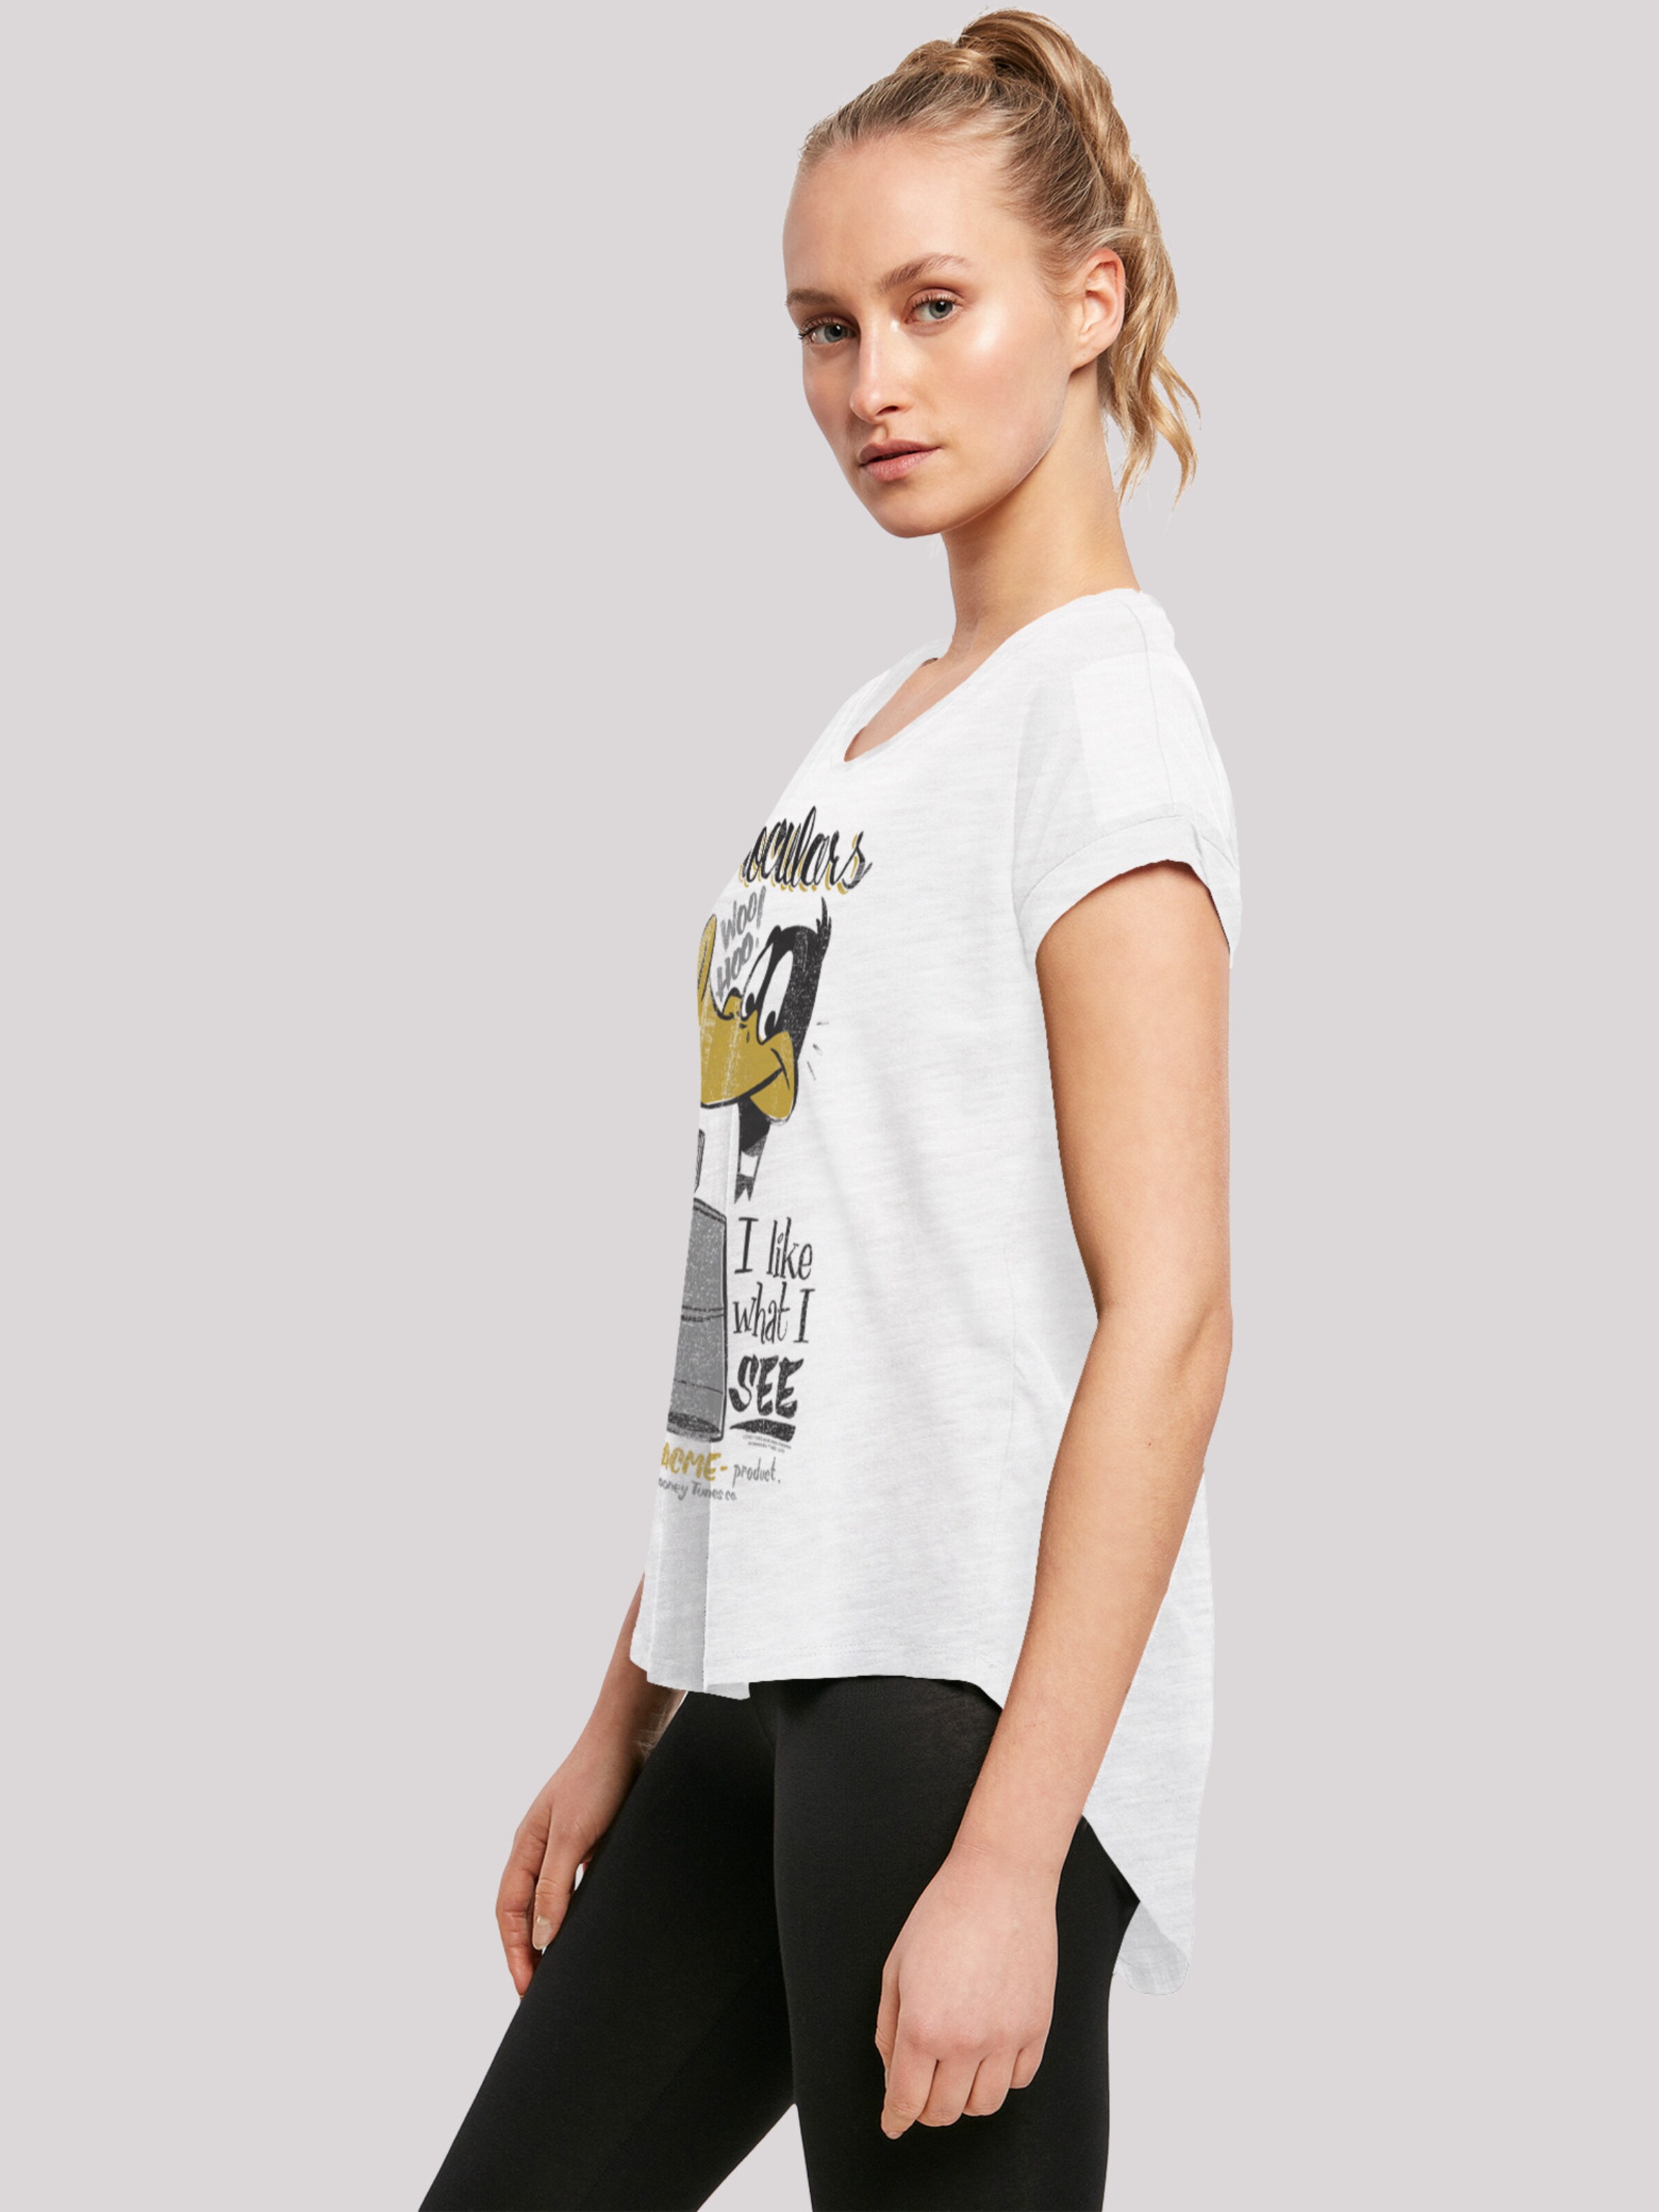 Frauen Shirts & Tops F4NT4STIC Shirt in Weiß, Weißmeliert - DK06414